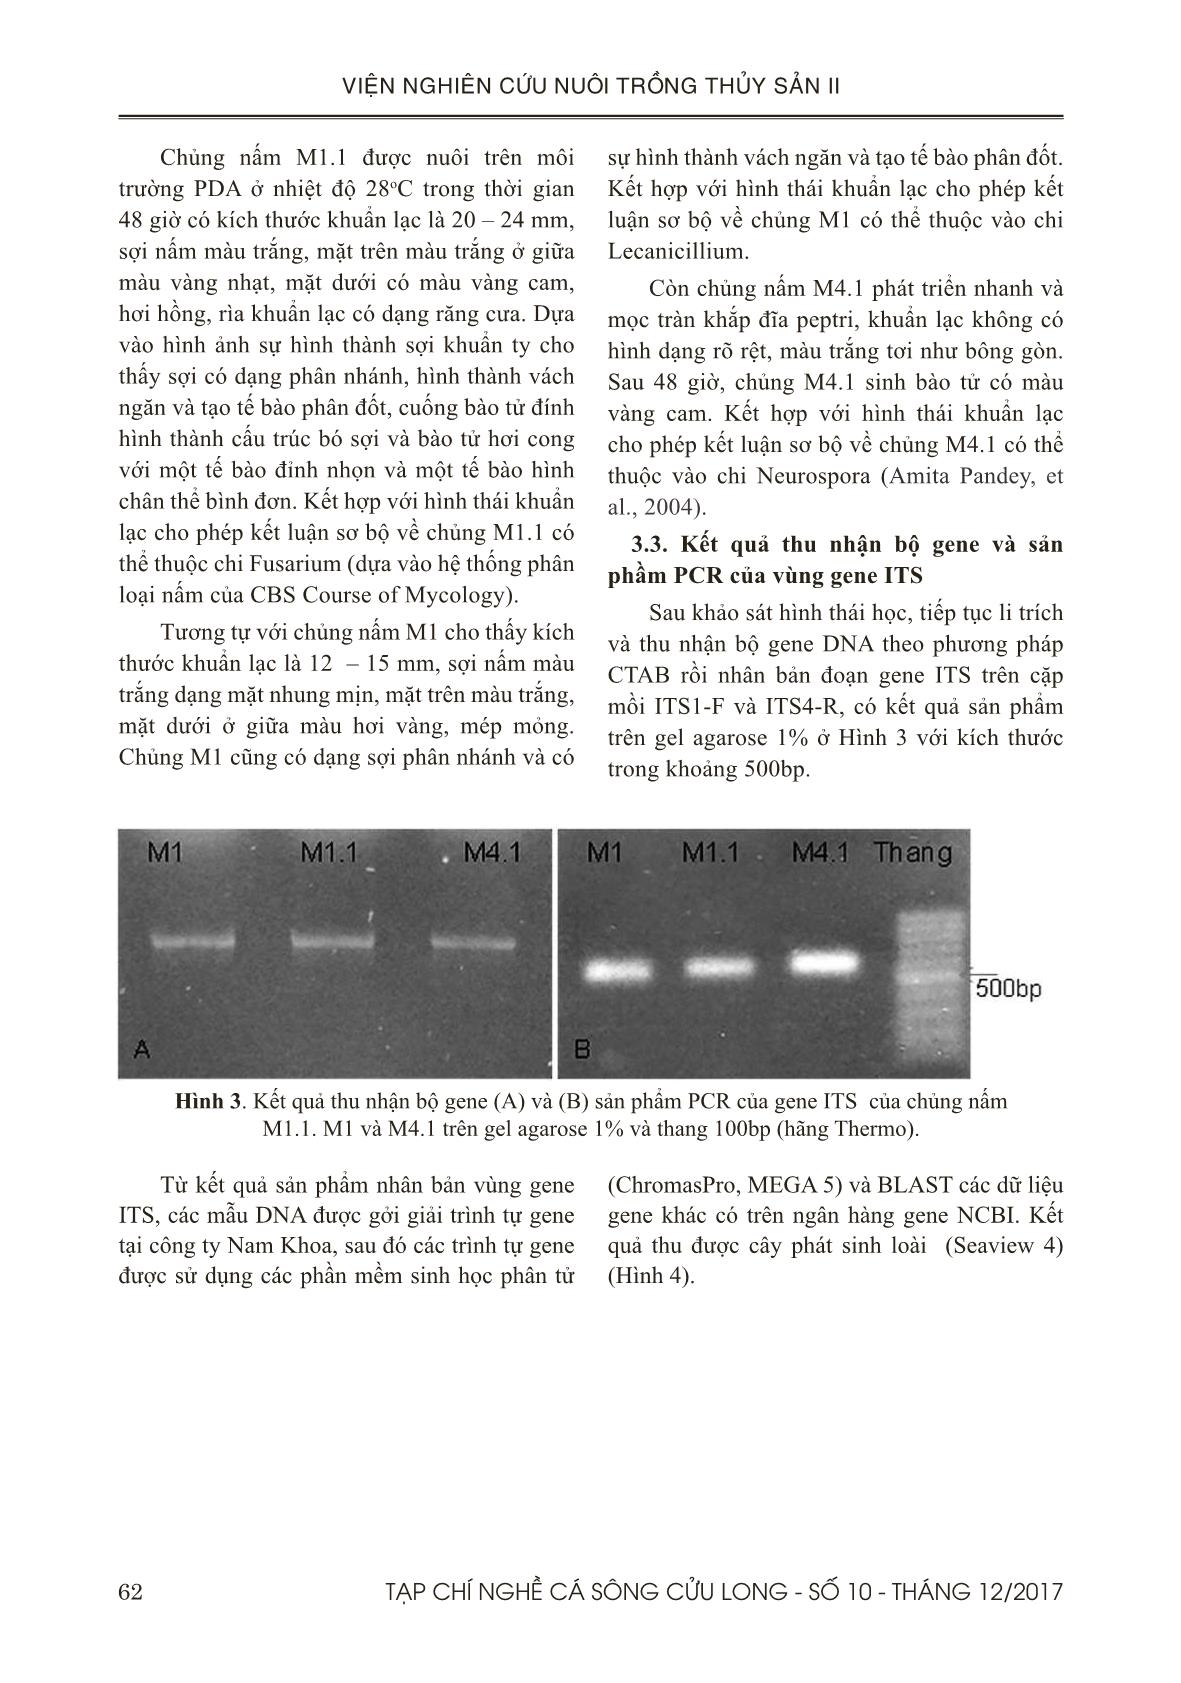 Xác định một số nấm gây bệnh trên trứng cá bá chủ (pterapogon kauderni) trong quá trình ấp bằng phương pháp pcr và sem trang 5